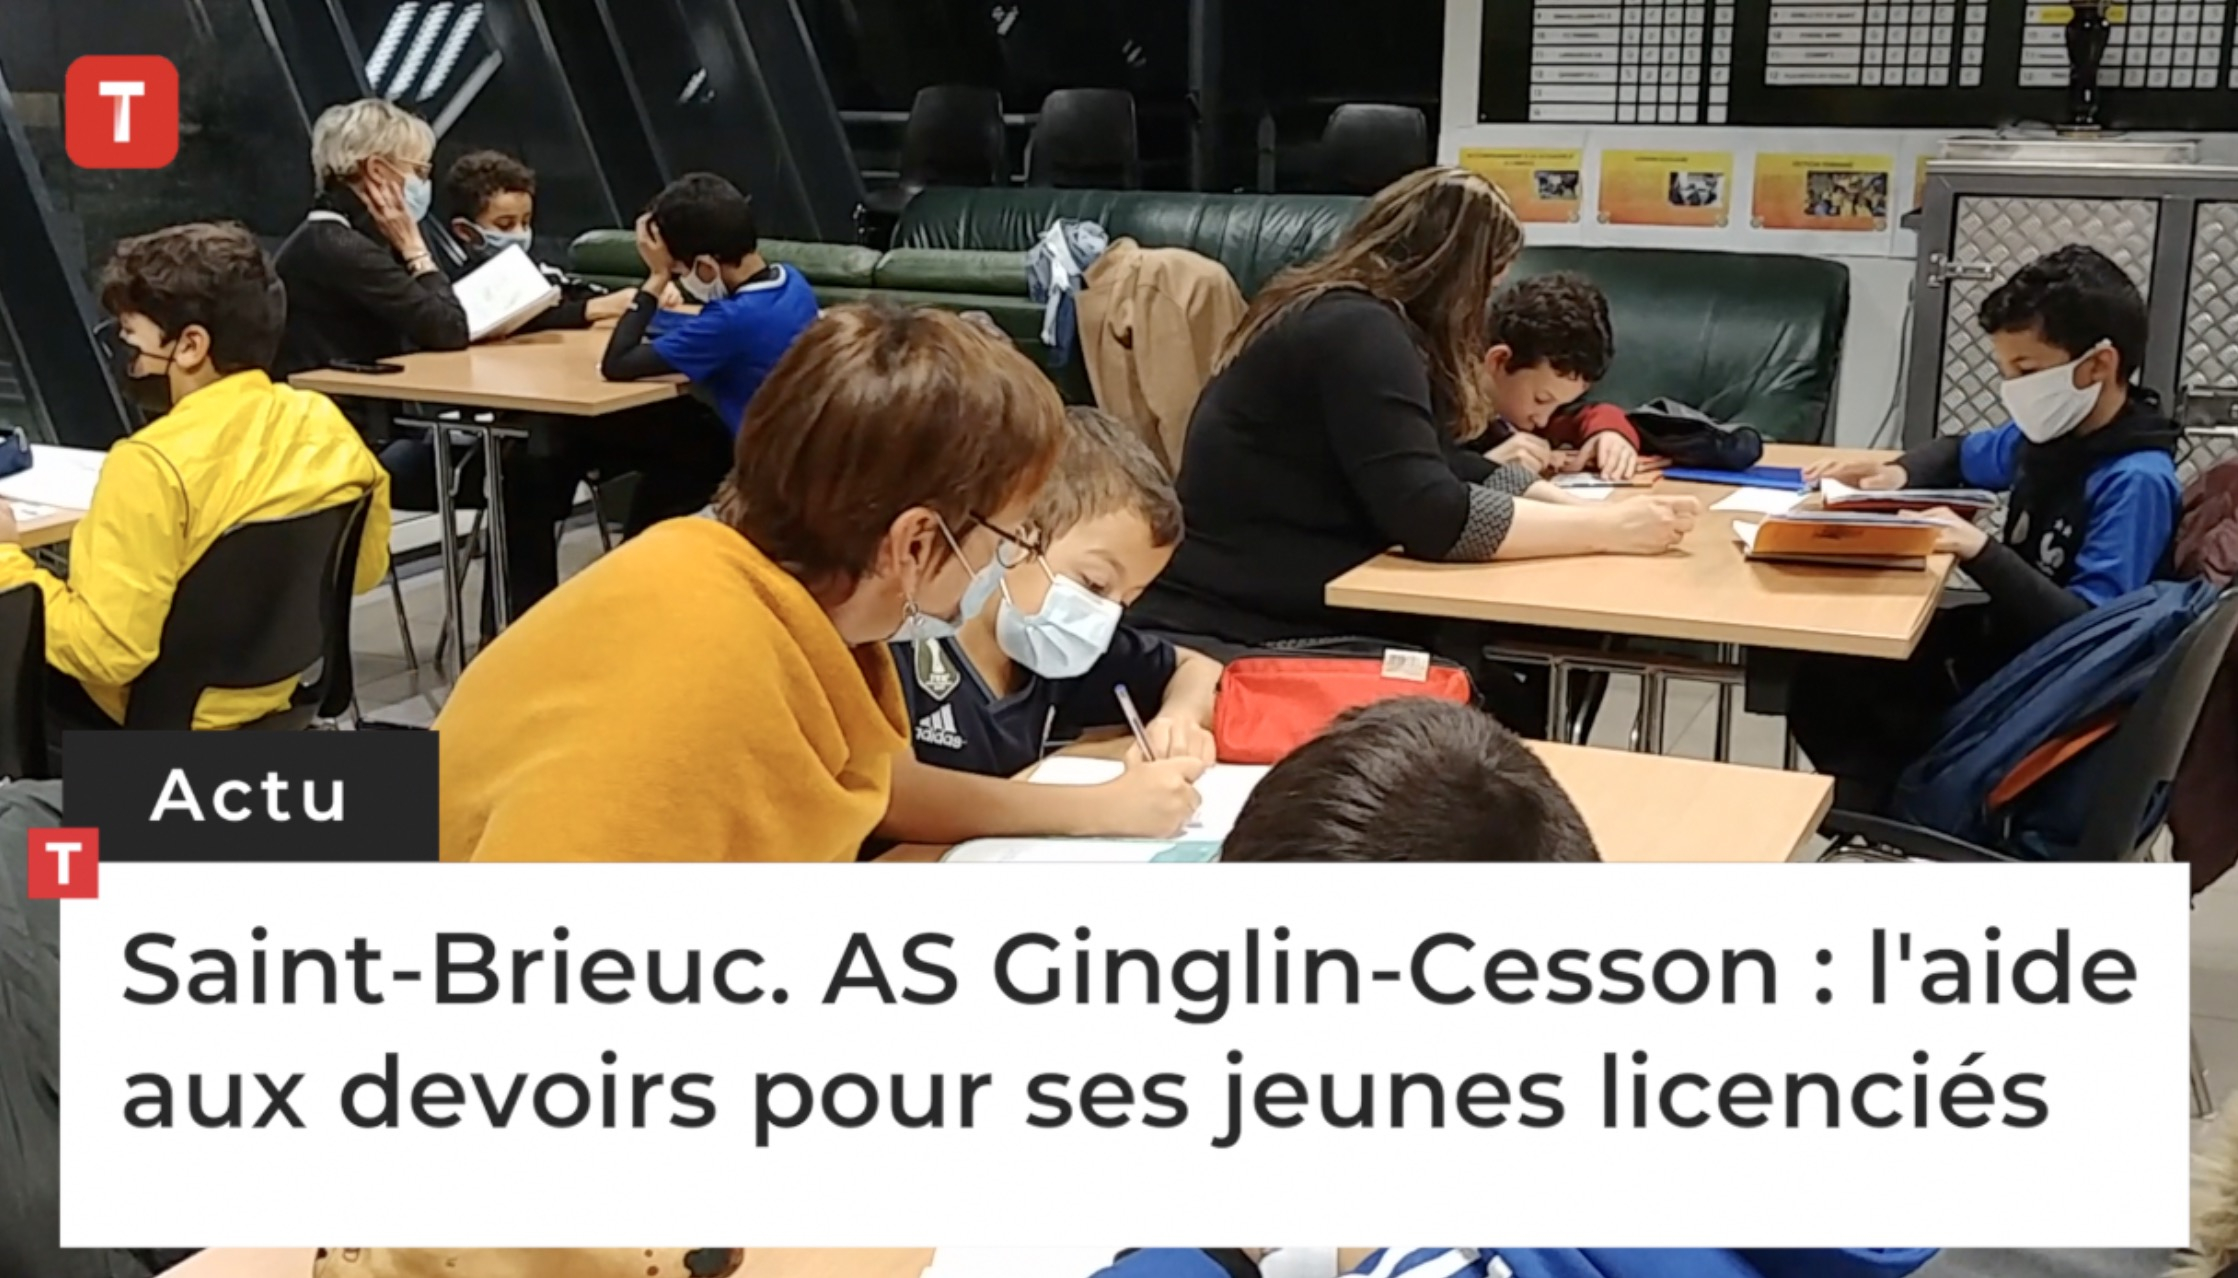 Saint-Brieuc. AS Ginglin-Cesson : le club de foot fait de l'aide aux devoirs pour ses jeunes licenciés (Le Télégramme)